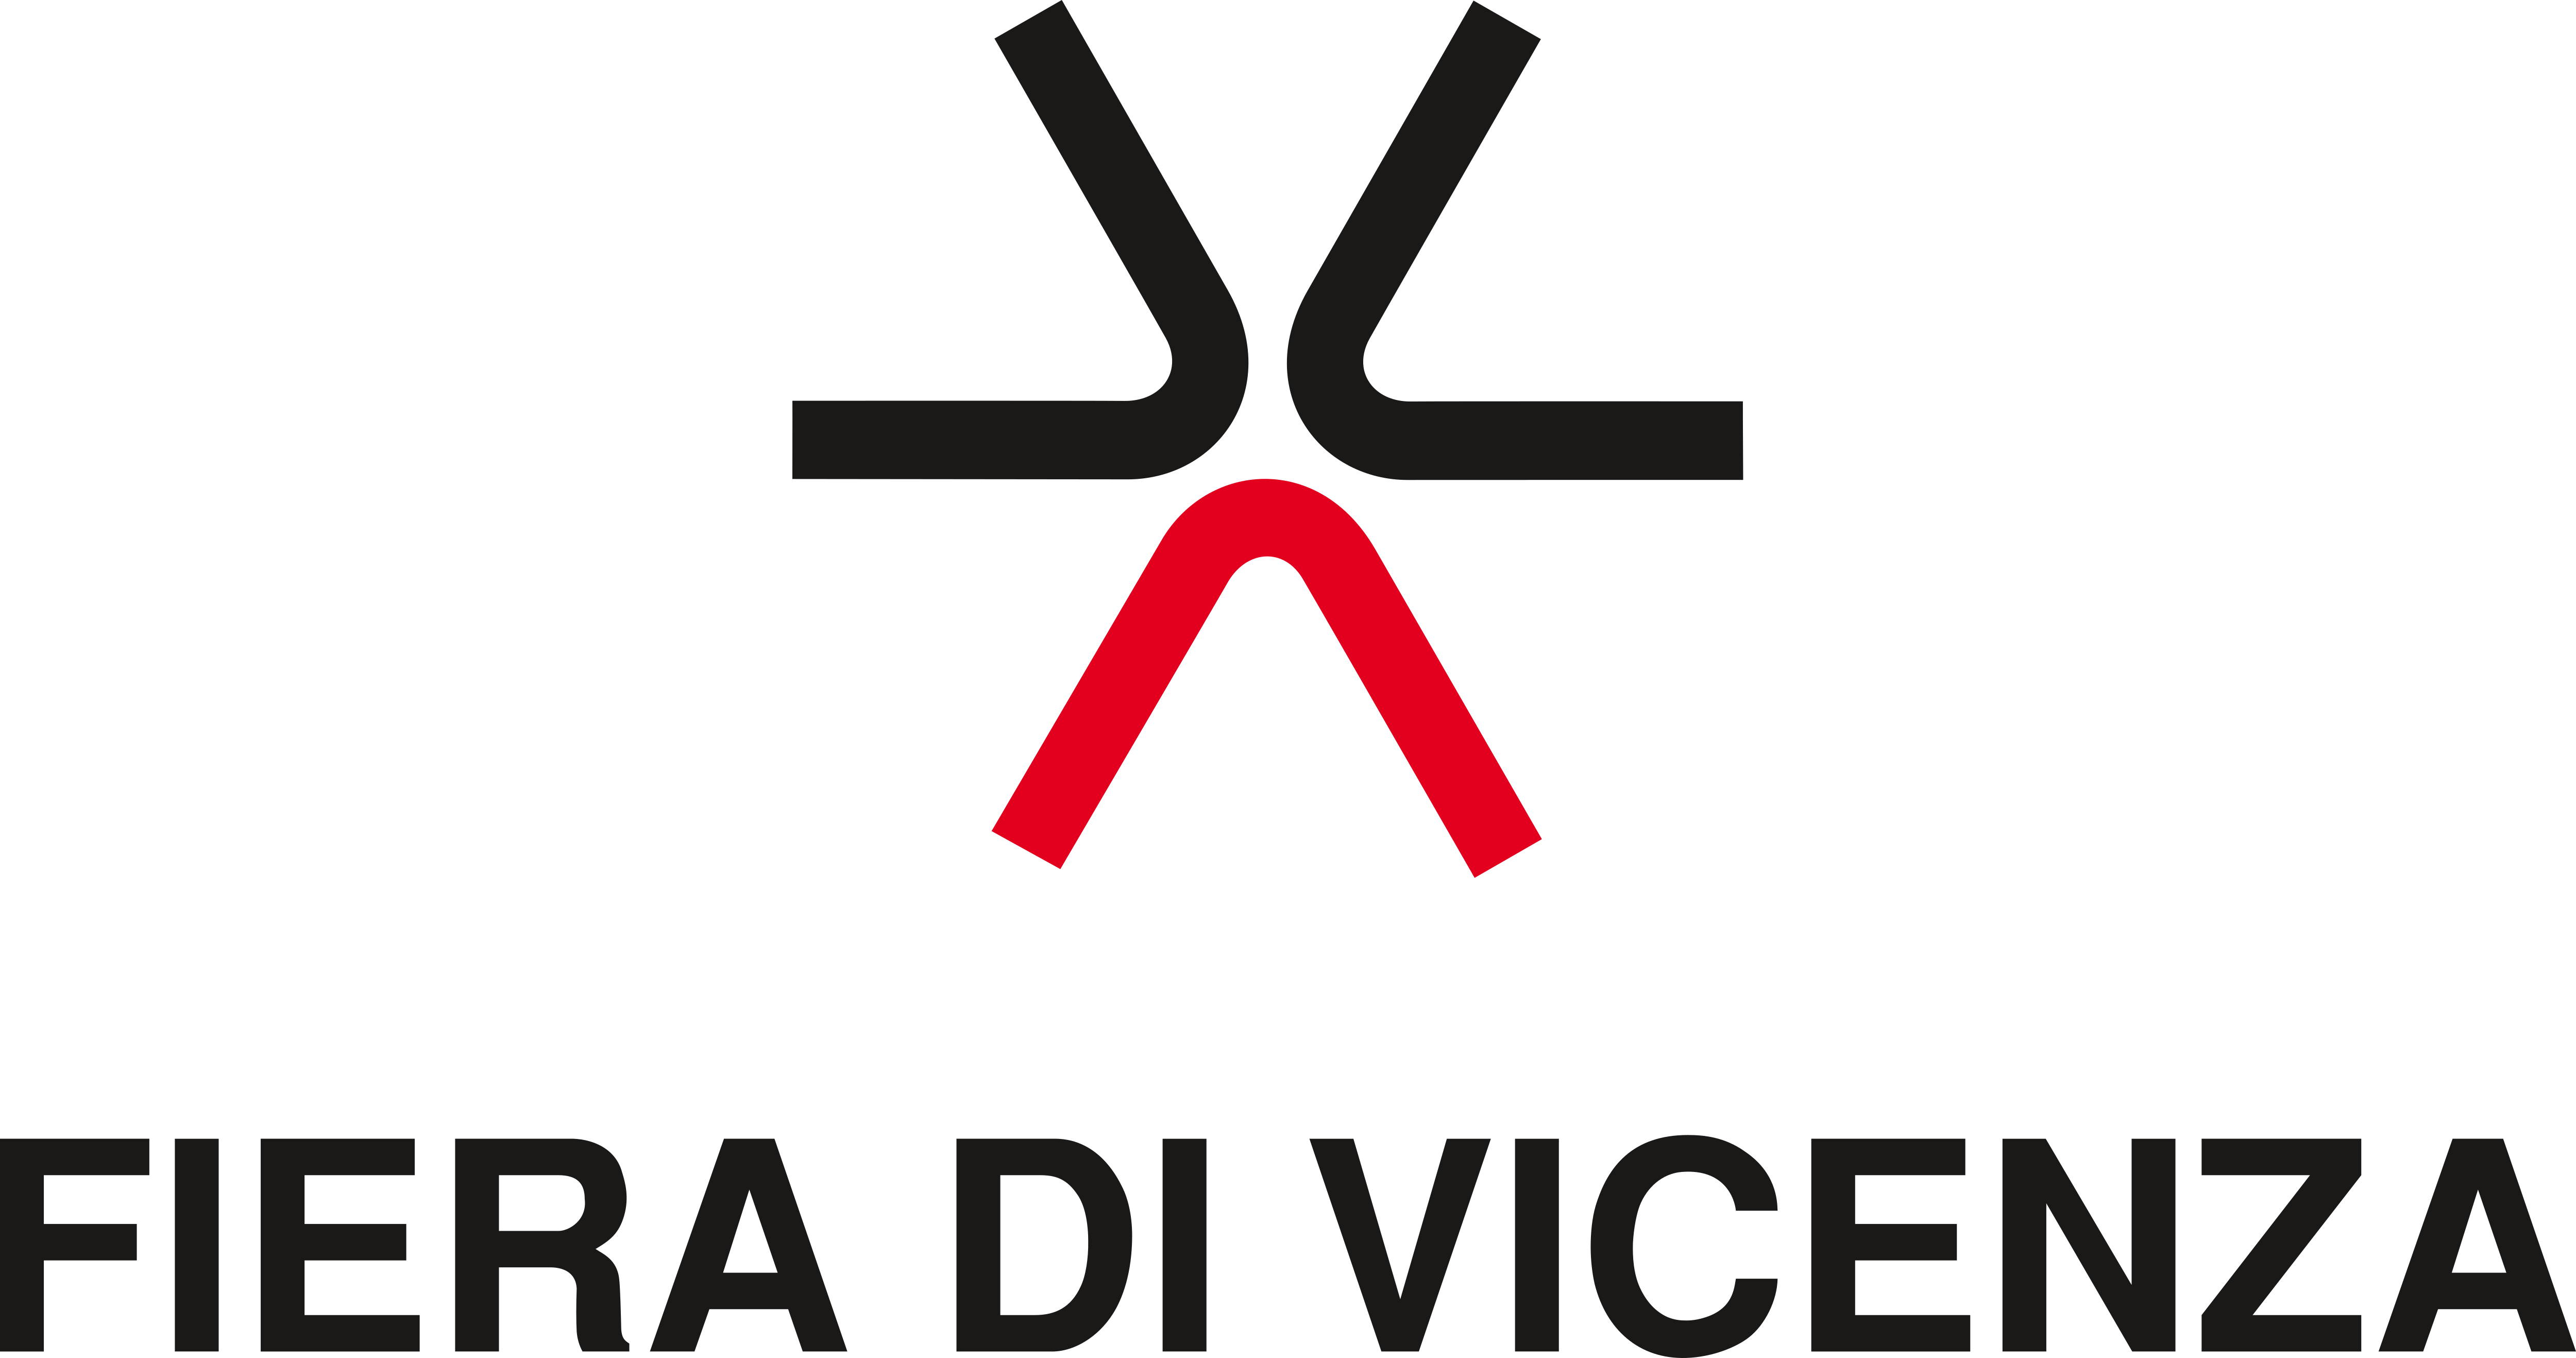 Vicenza Logo - Fiera di Vicenza